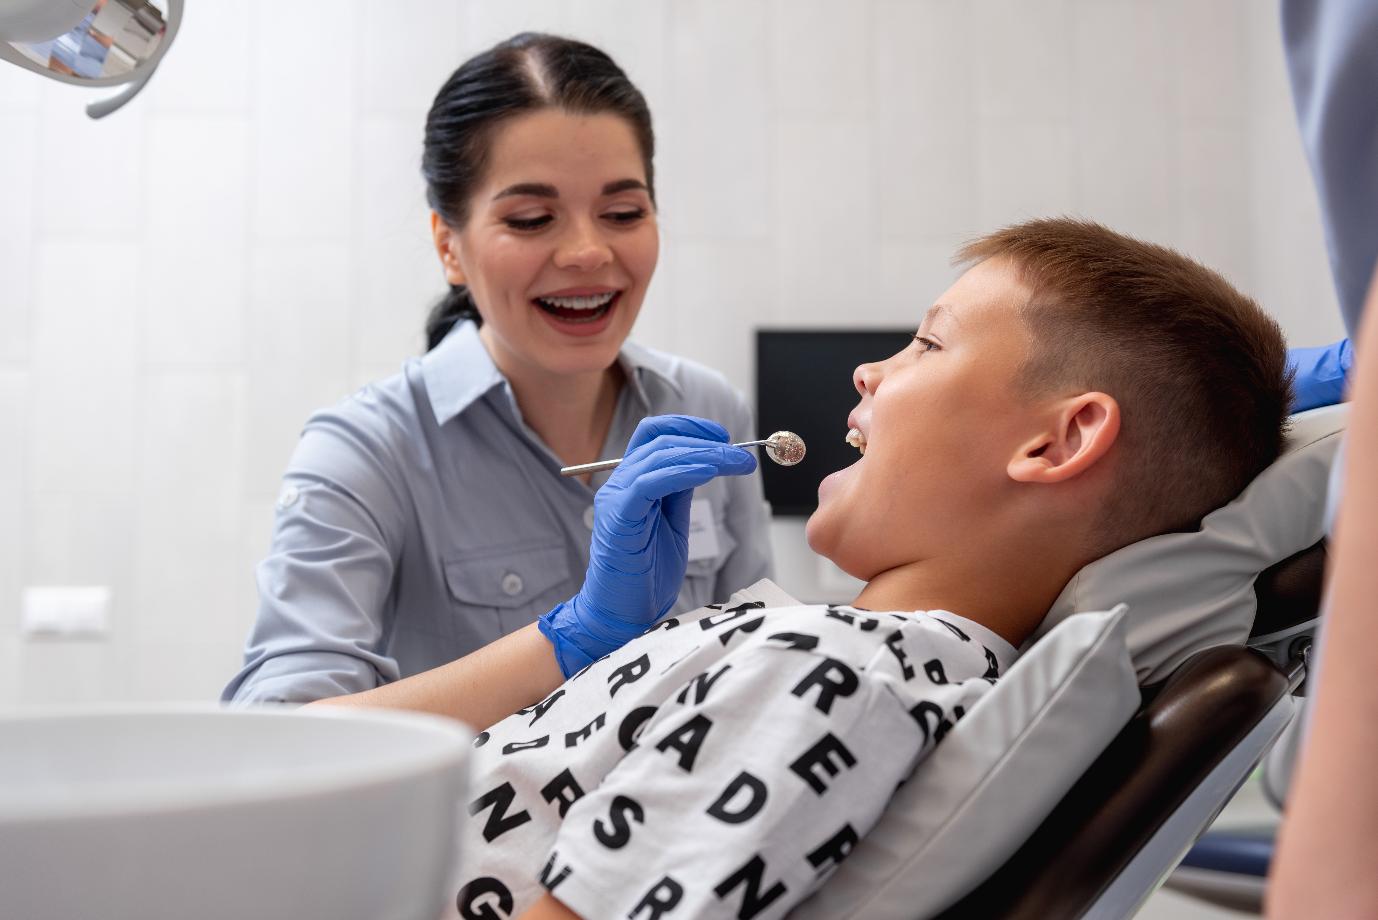 Почему нужно лечить детей именно у детского стоматолога, ведь все изучают одни сведения, дети от взрослых не сильно отличаются?